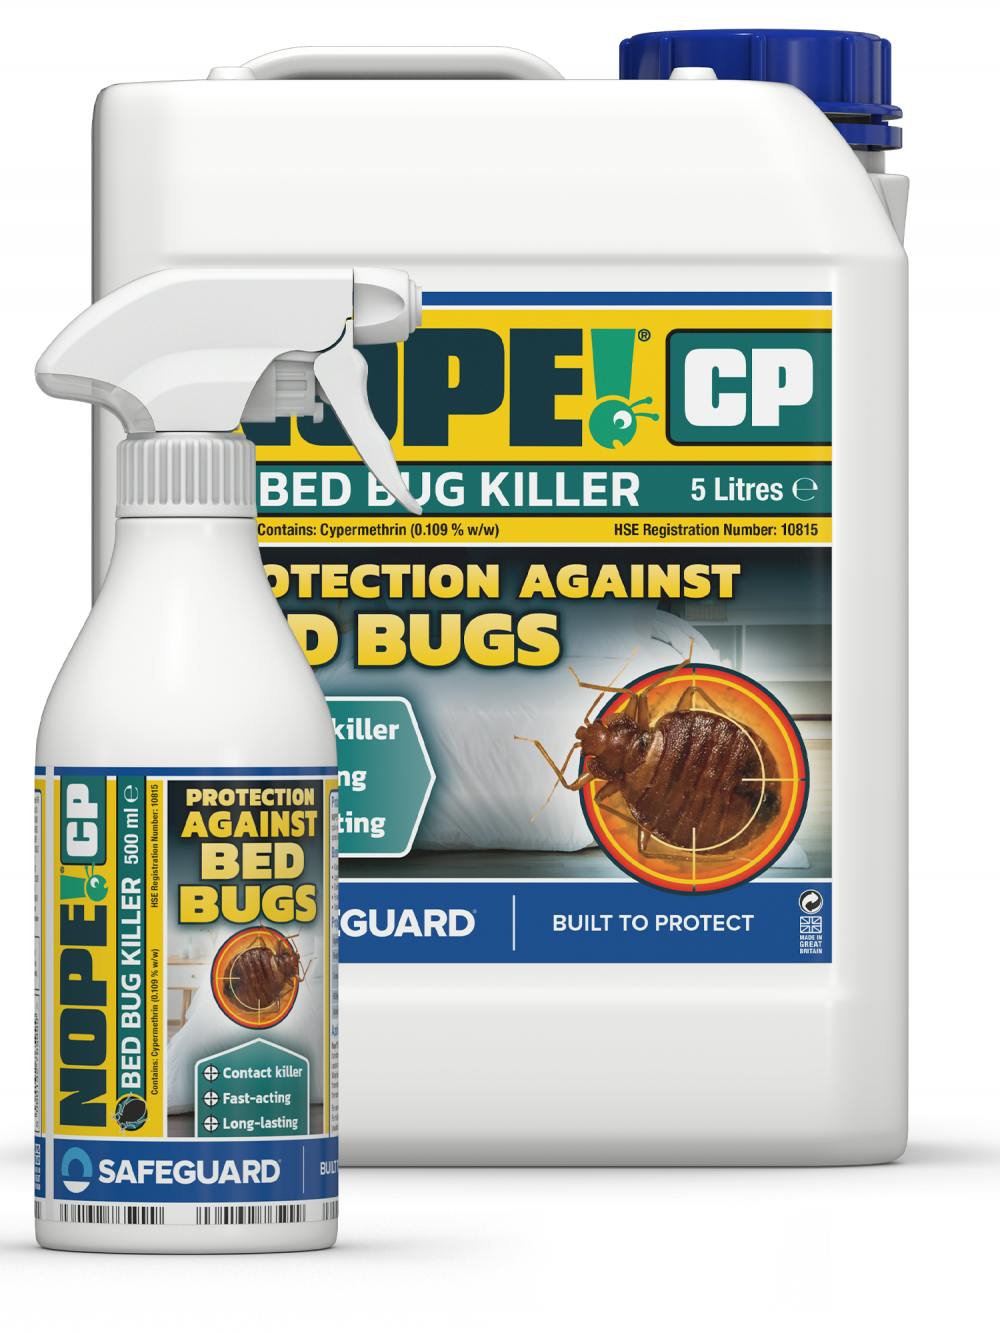 NOPE! CP Bed Bug Killer